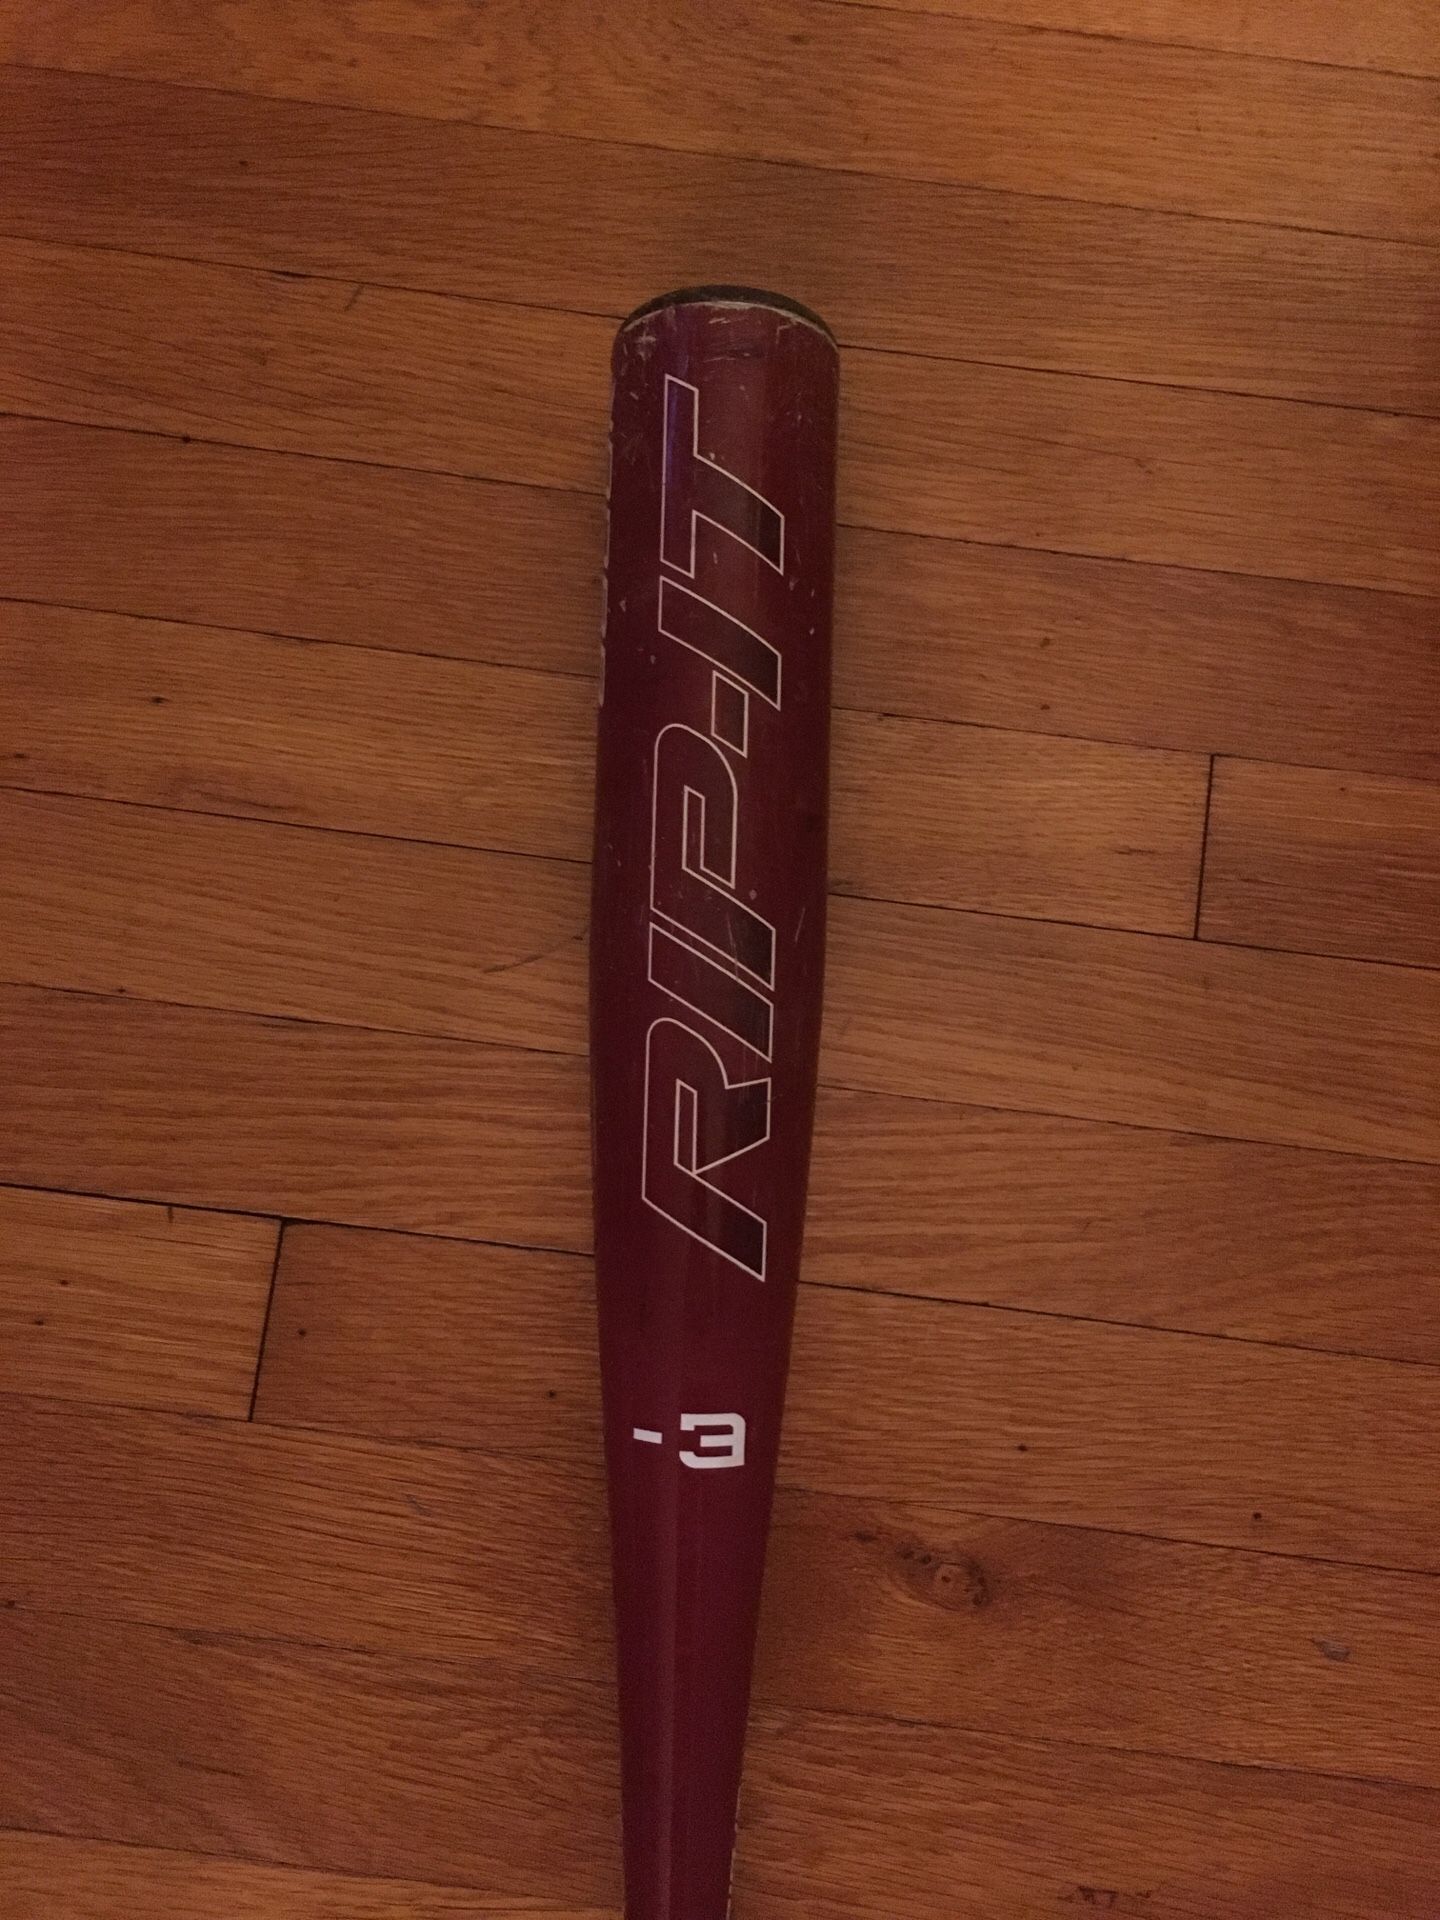 2013 rip it BBCOR baseball bat